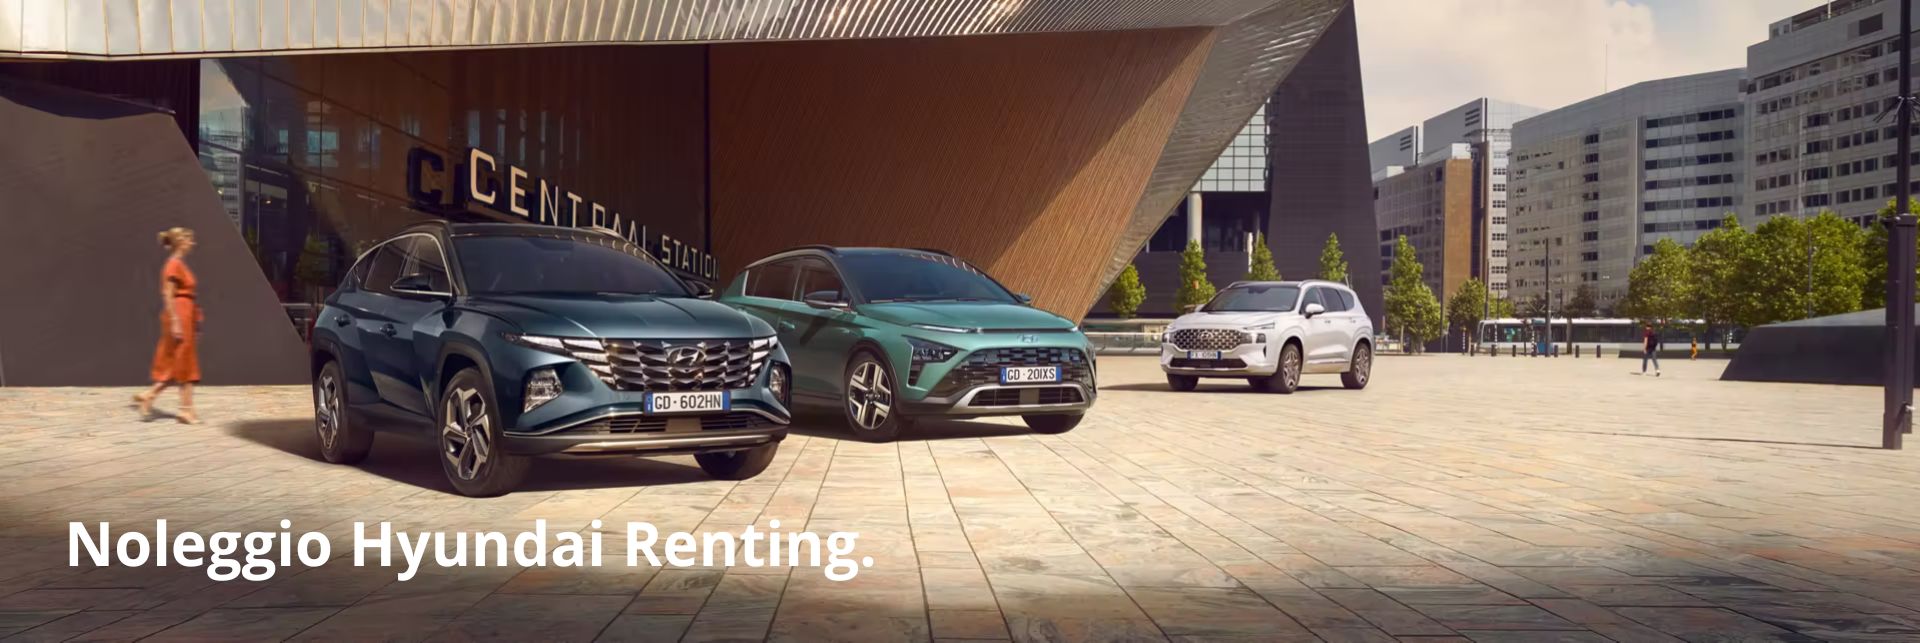 Noleggio Hyundai Renting